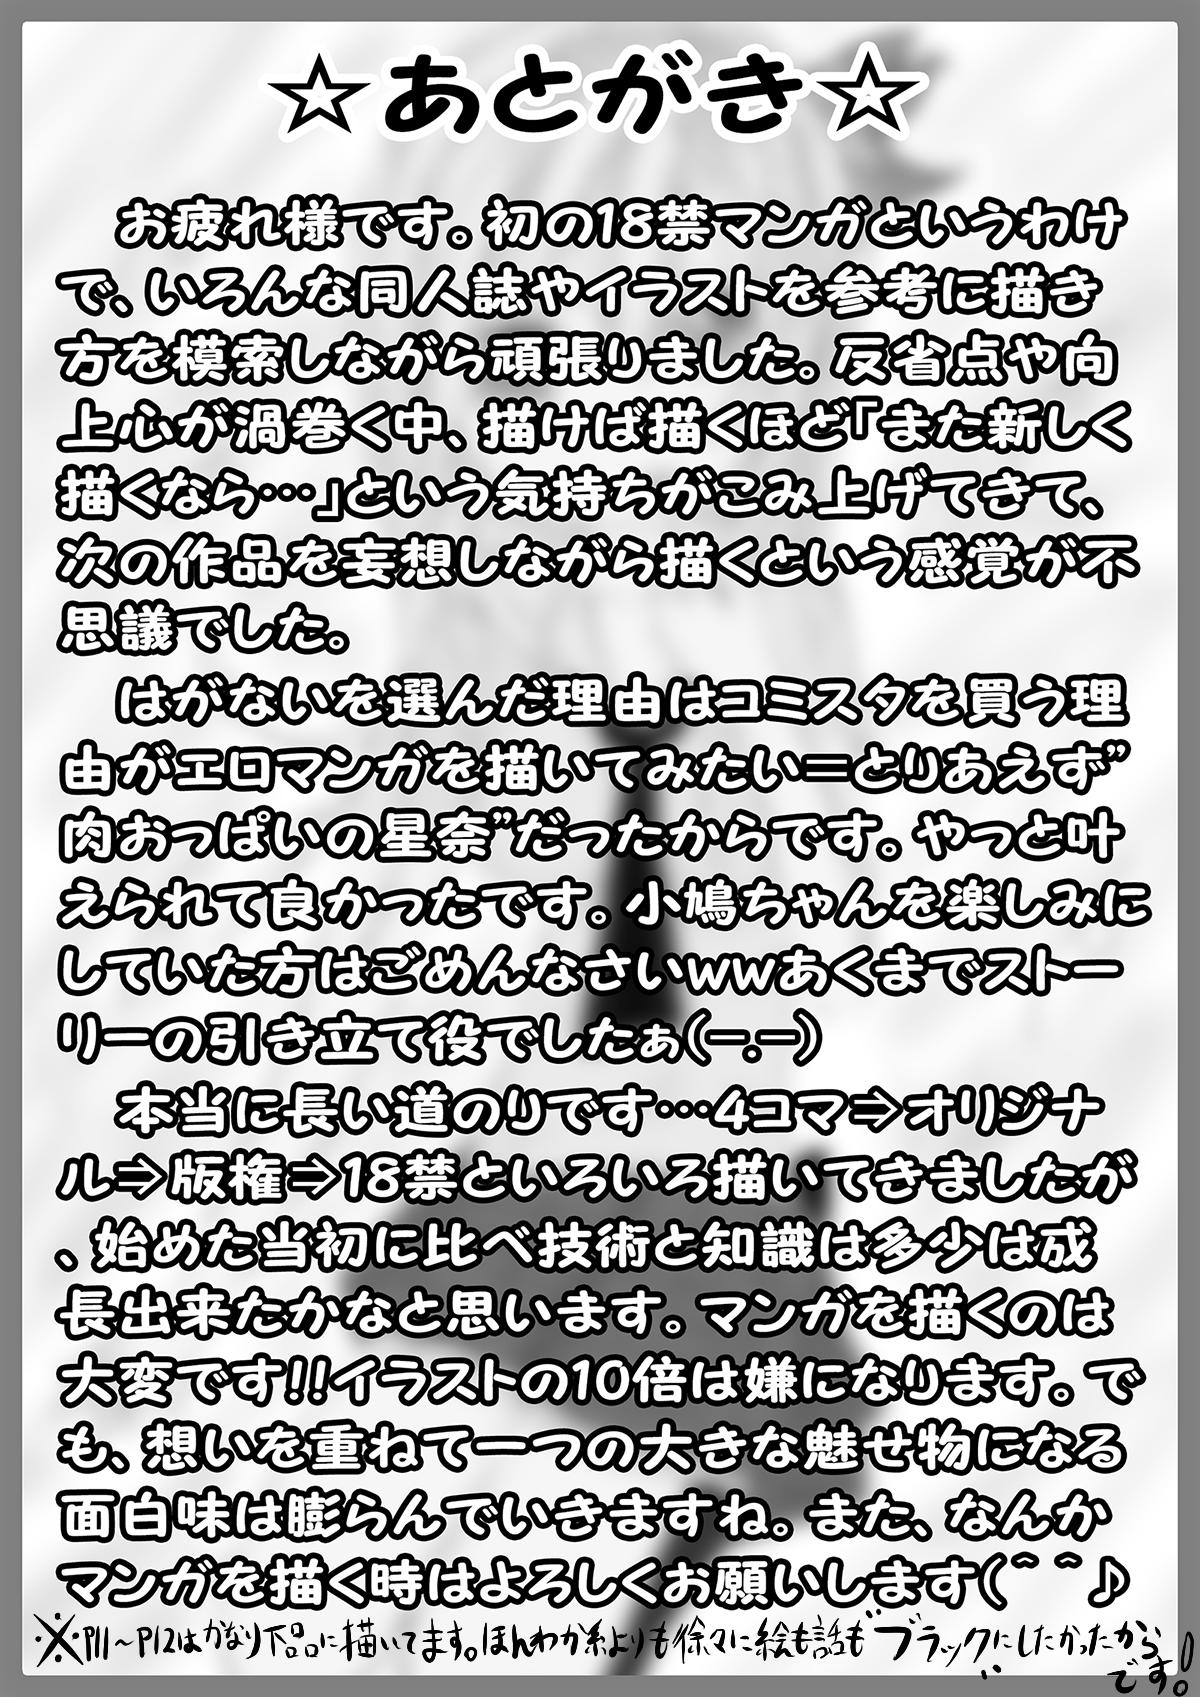 Casting 僕は××友達が少ない… - Boku wa tomodachi ga sukunai Facials - Page 14